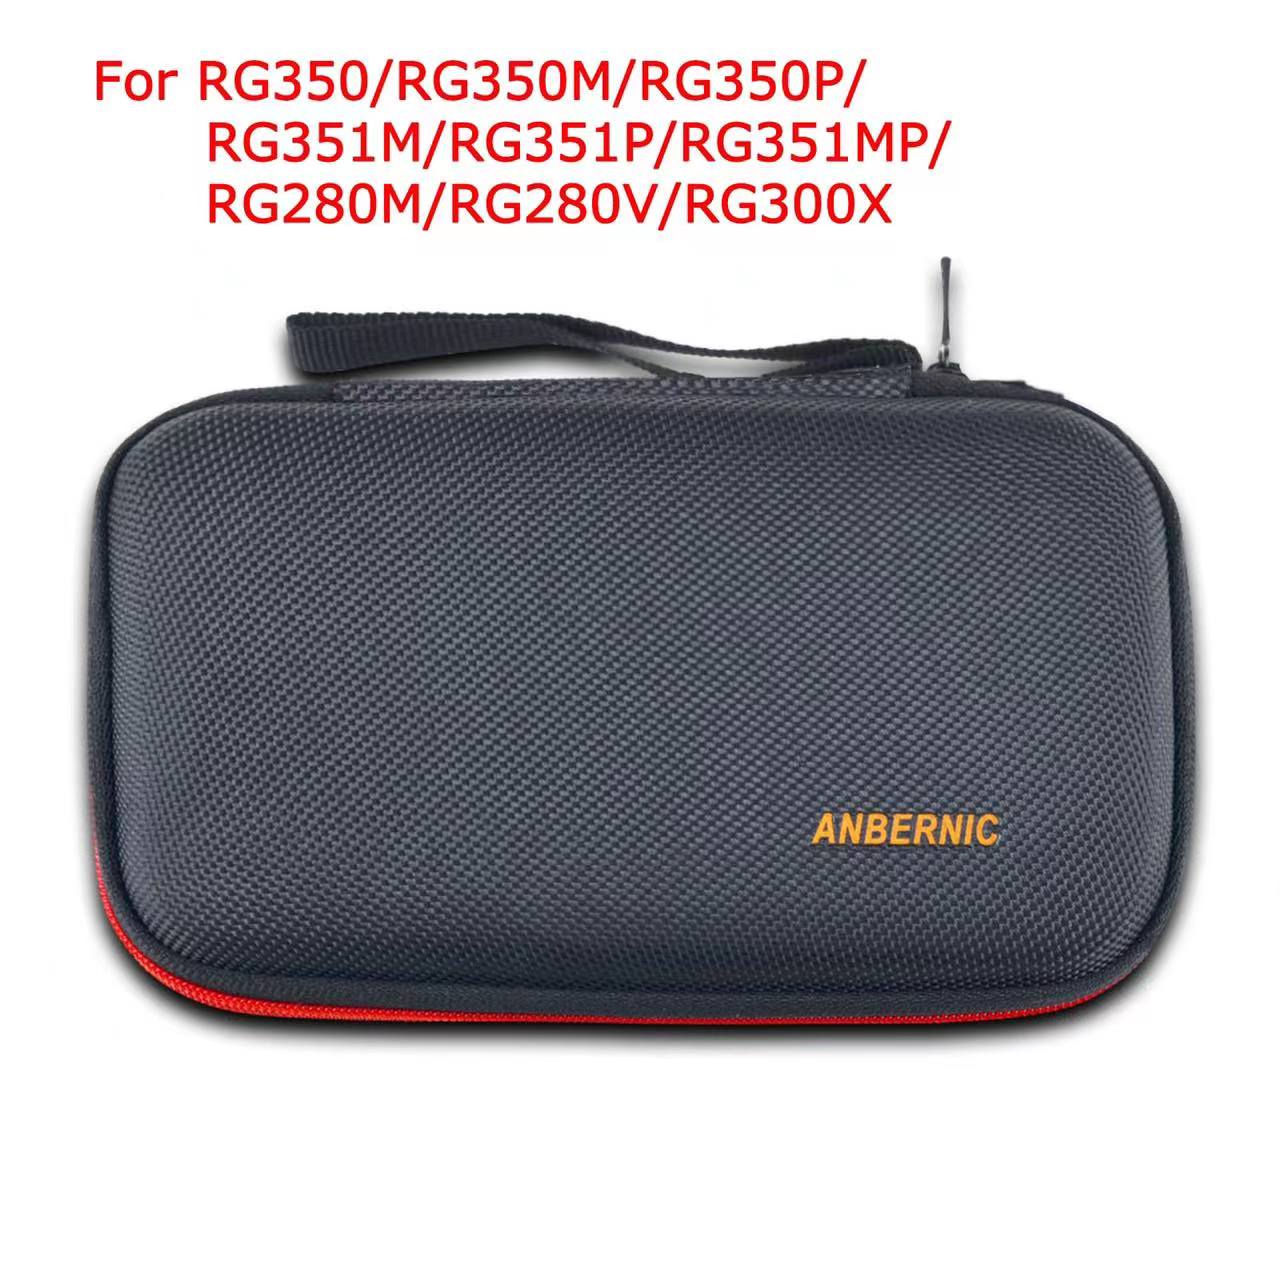 Sac de protection ANBERNIC RG350 / RG350M / RG350P et pièces pour console de jeu rétro Game Player RG351P Handheld Retro Game Console BAG et pièces expédiées de Chine